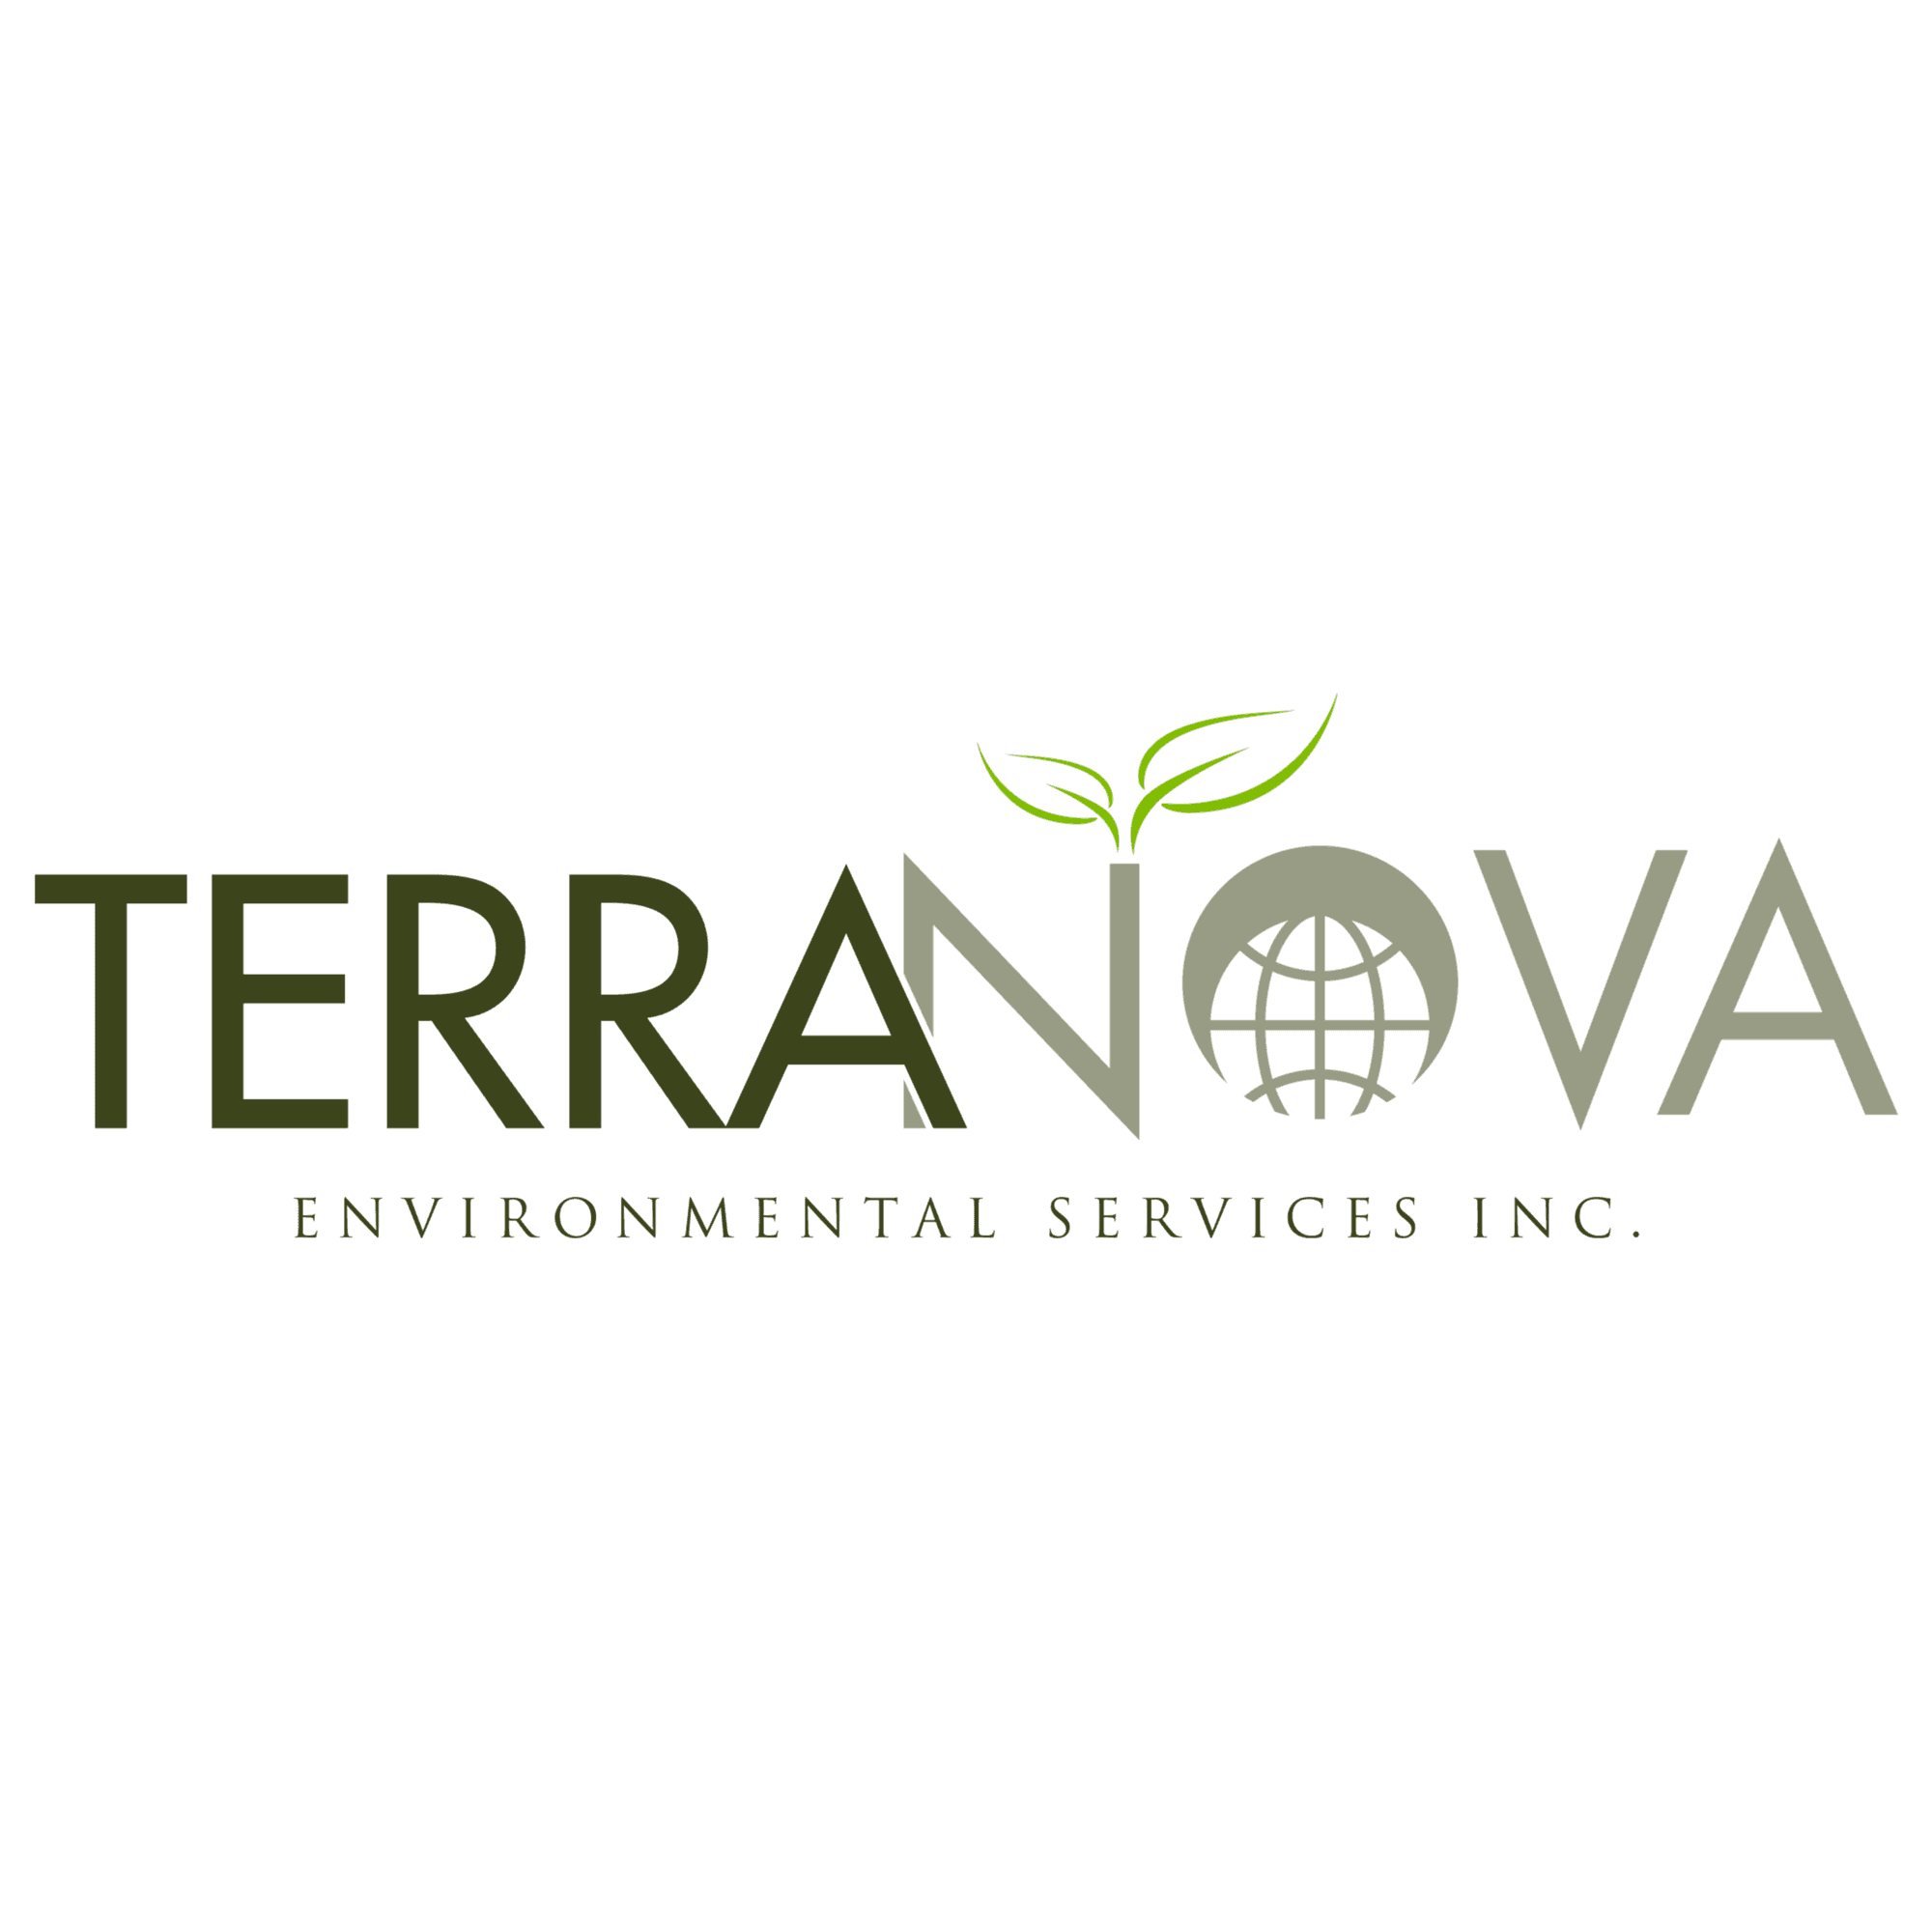 Terra Nova Environmental Services logo